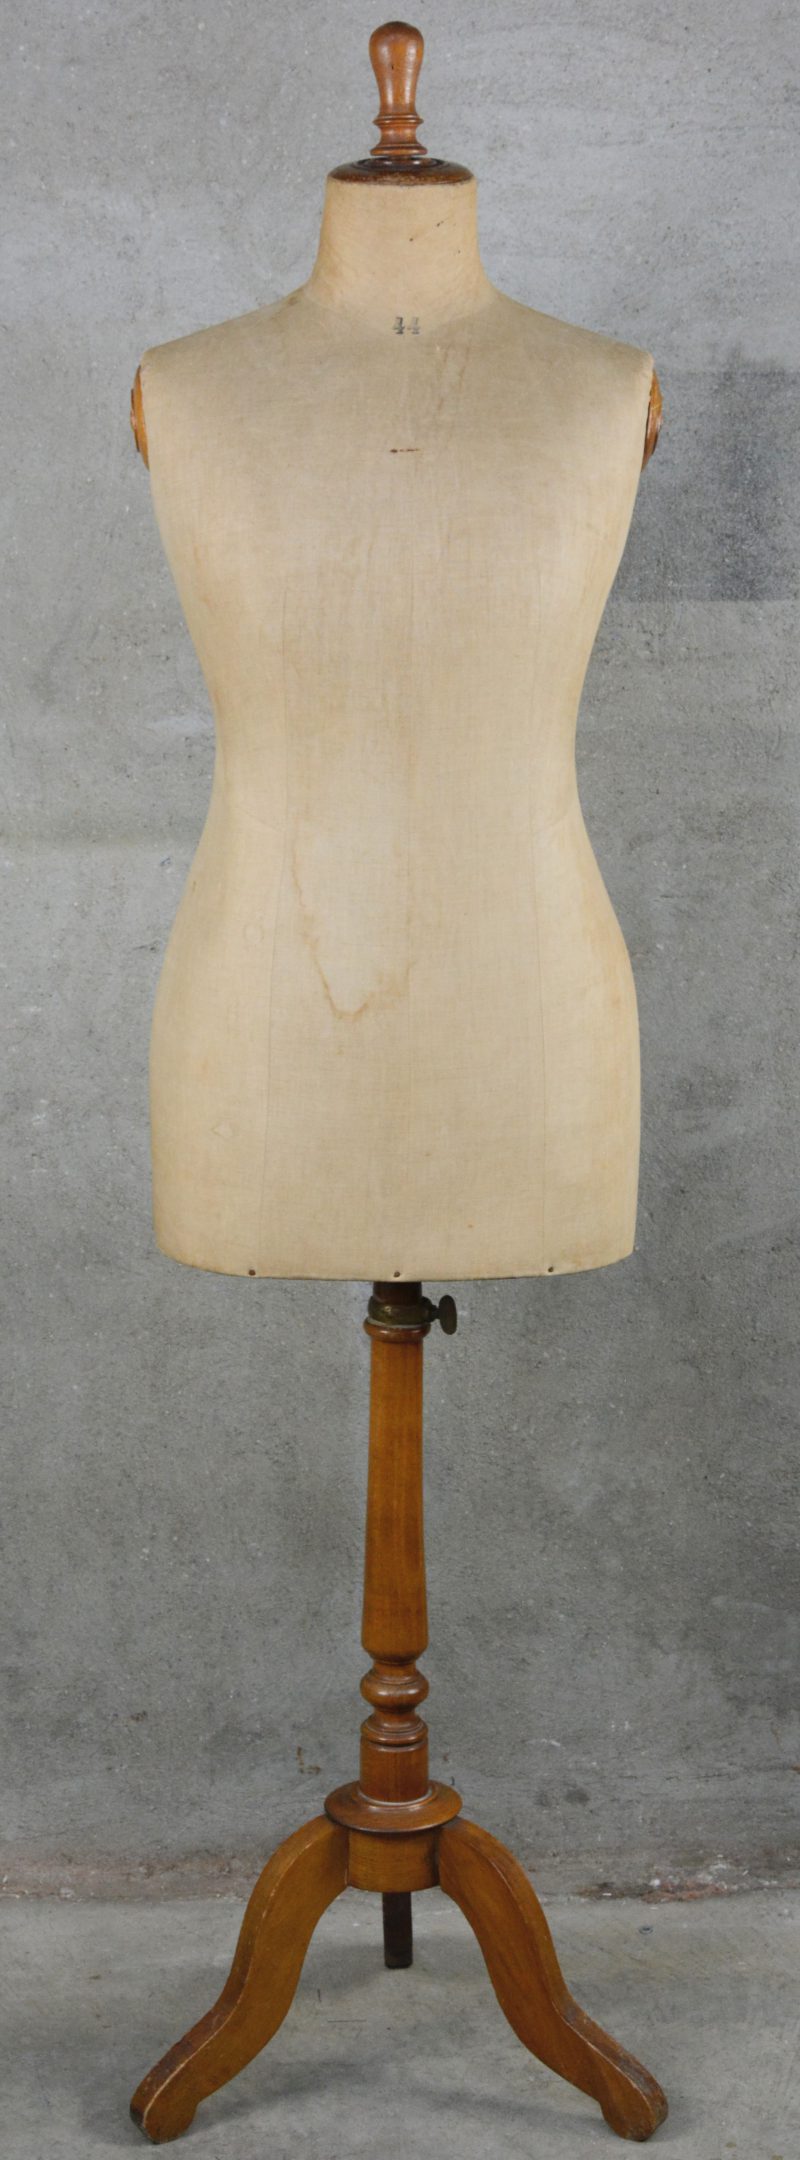 Een oude met linnen beklede paspop op houten voet.